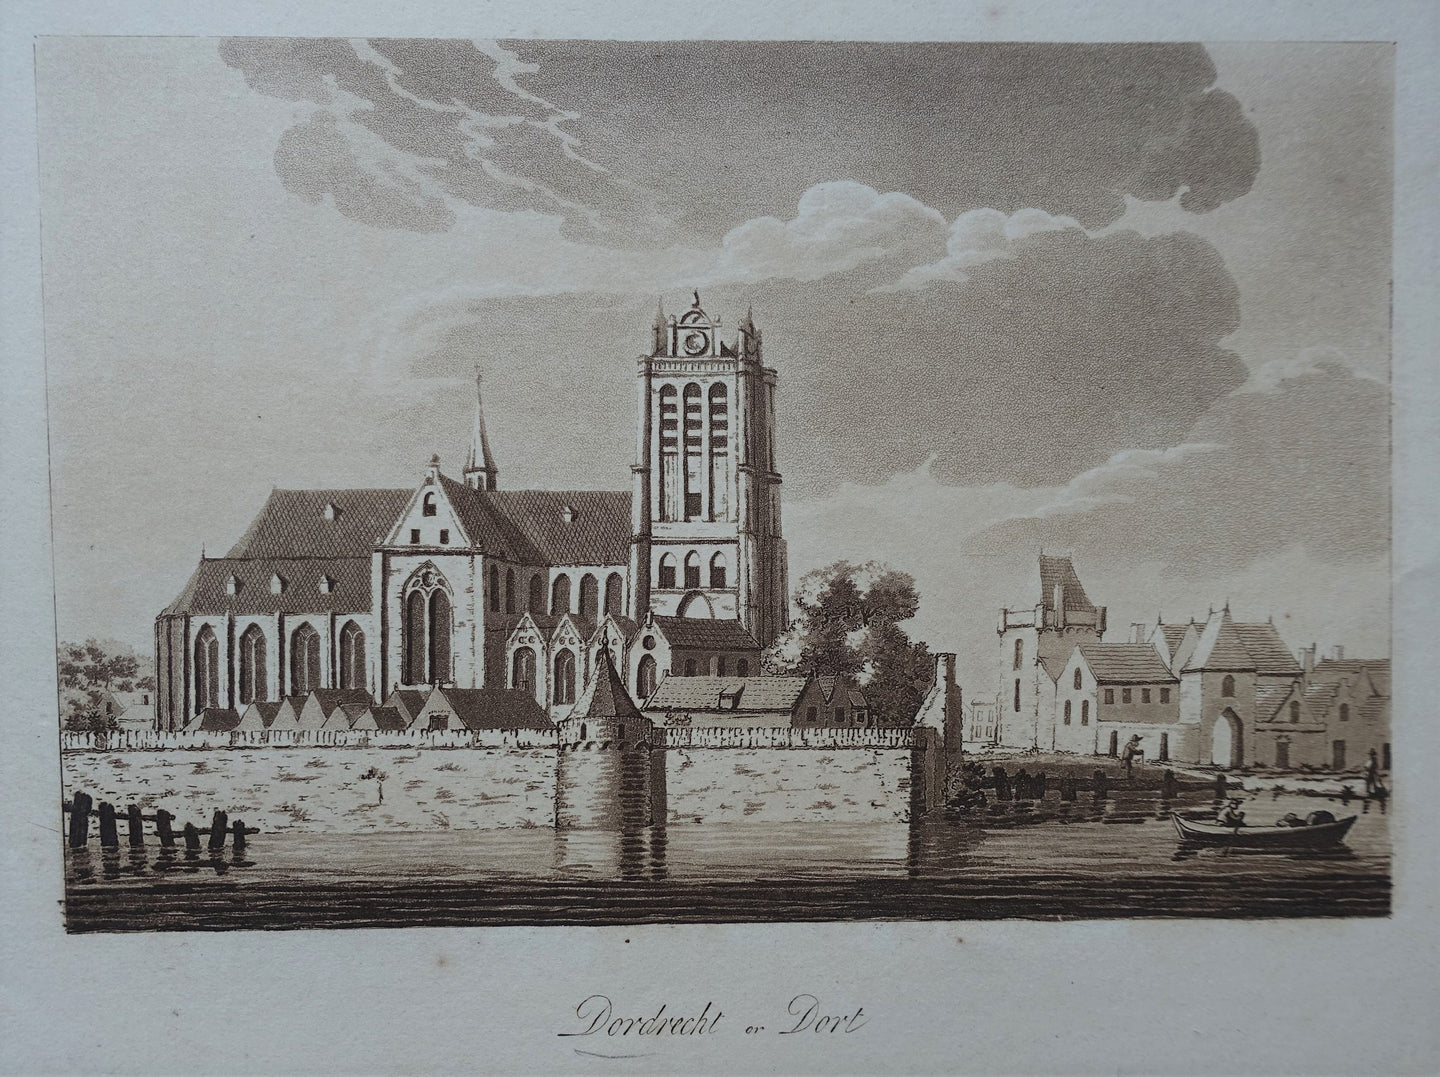 Dordrecht - S Ireland - 1792